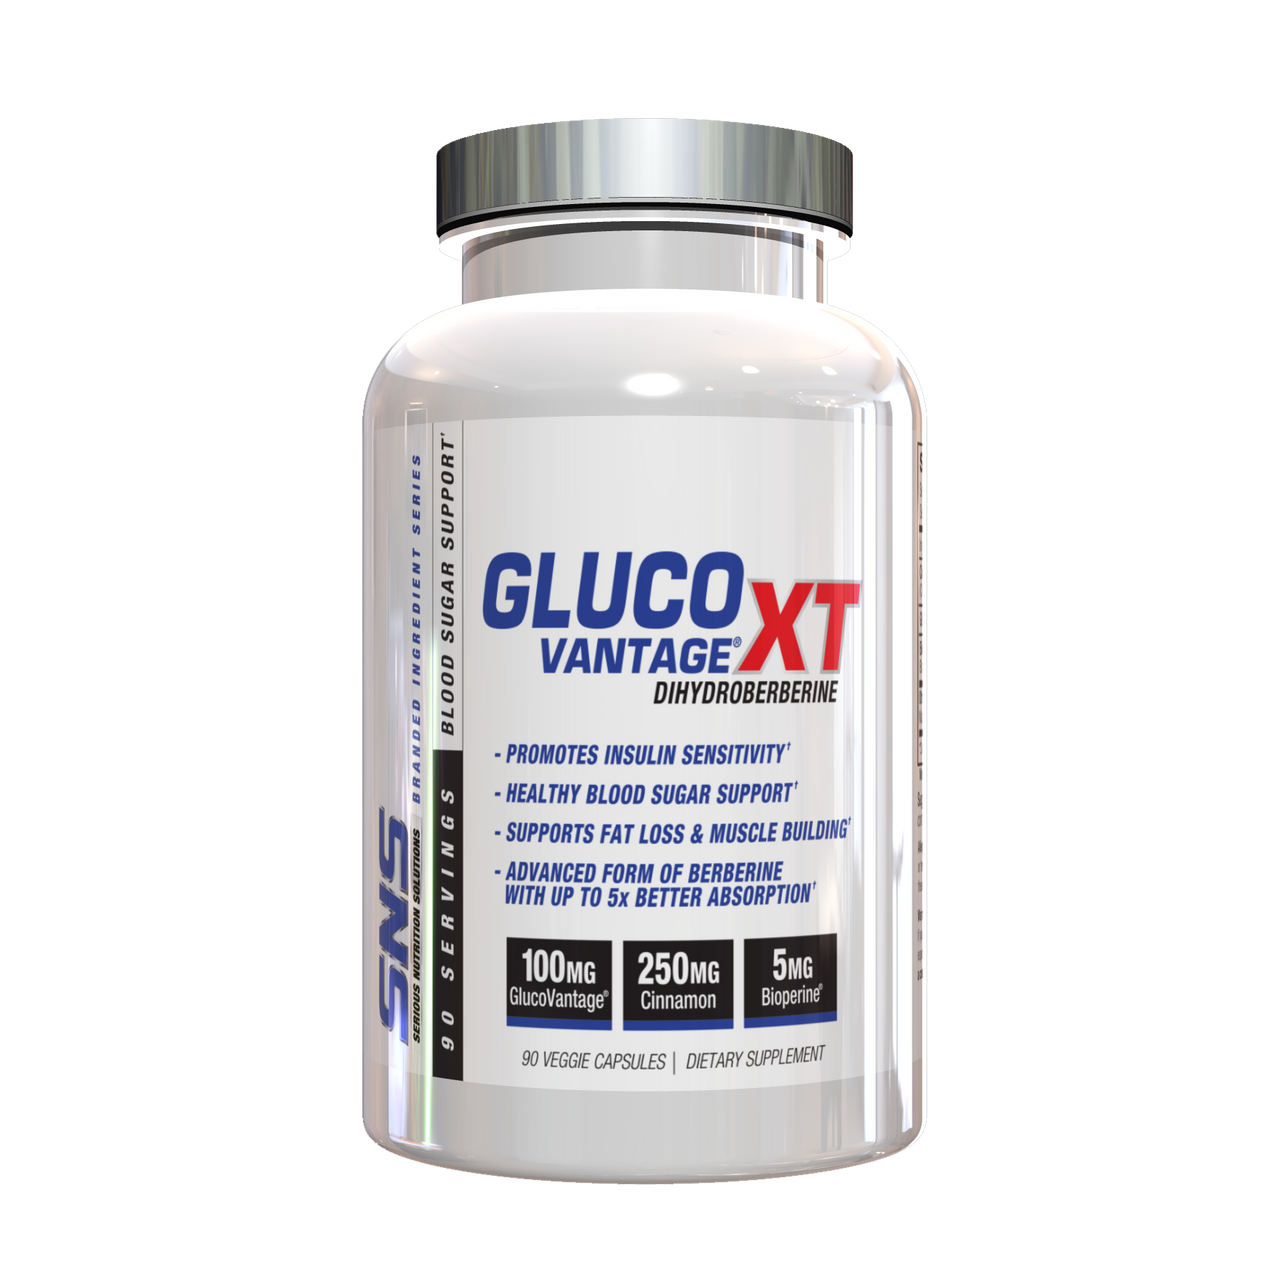 SNS GlucoVantage XT - A1 Supplements Store